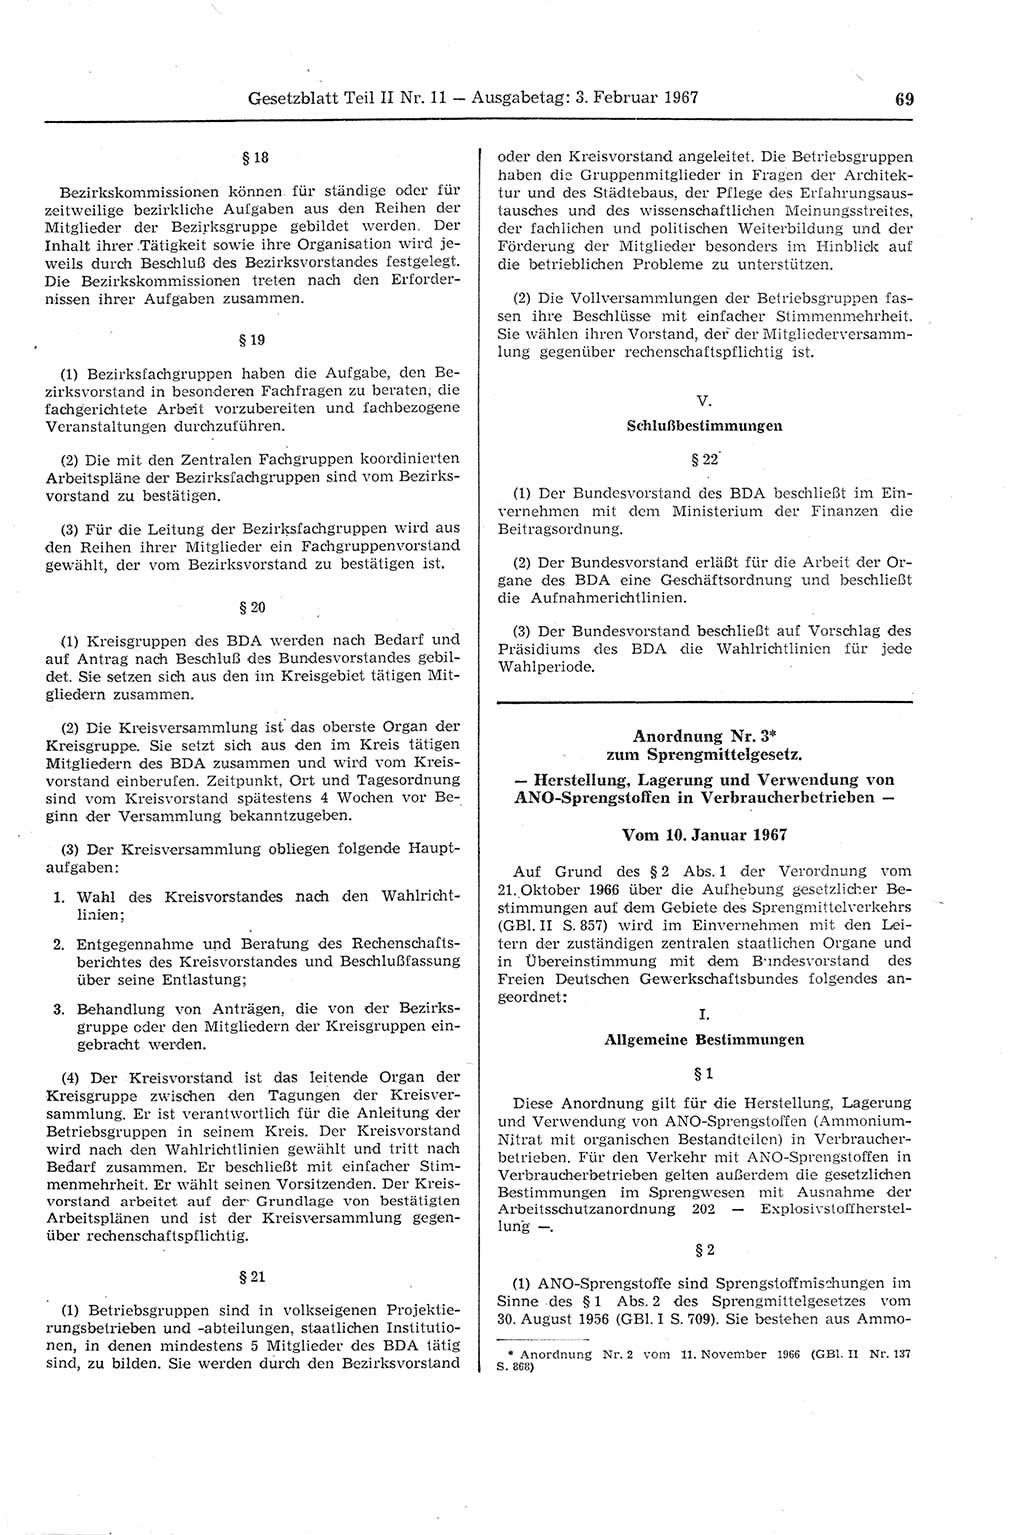 Gesetzblatt (GBl.) der Deutschen Demokratischen Republik (DDR) Teil ⅠⅠ 1967, Seite 69 (GBl. DDR ⅠⅠ 1967, S. 69)